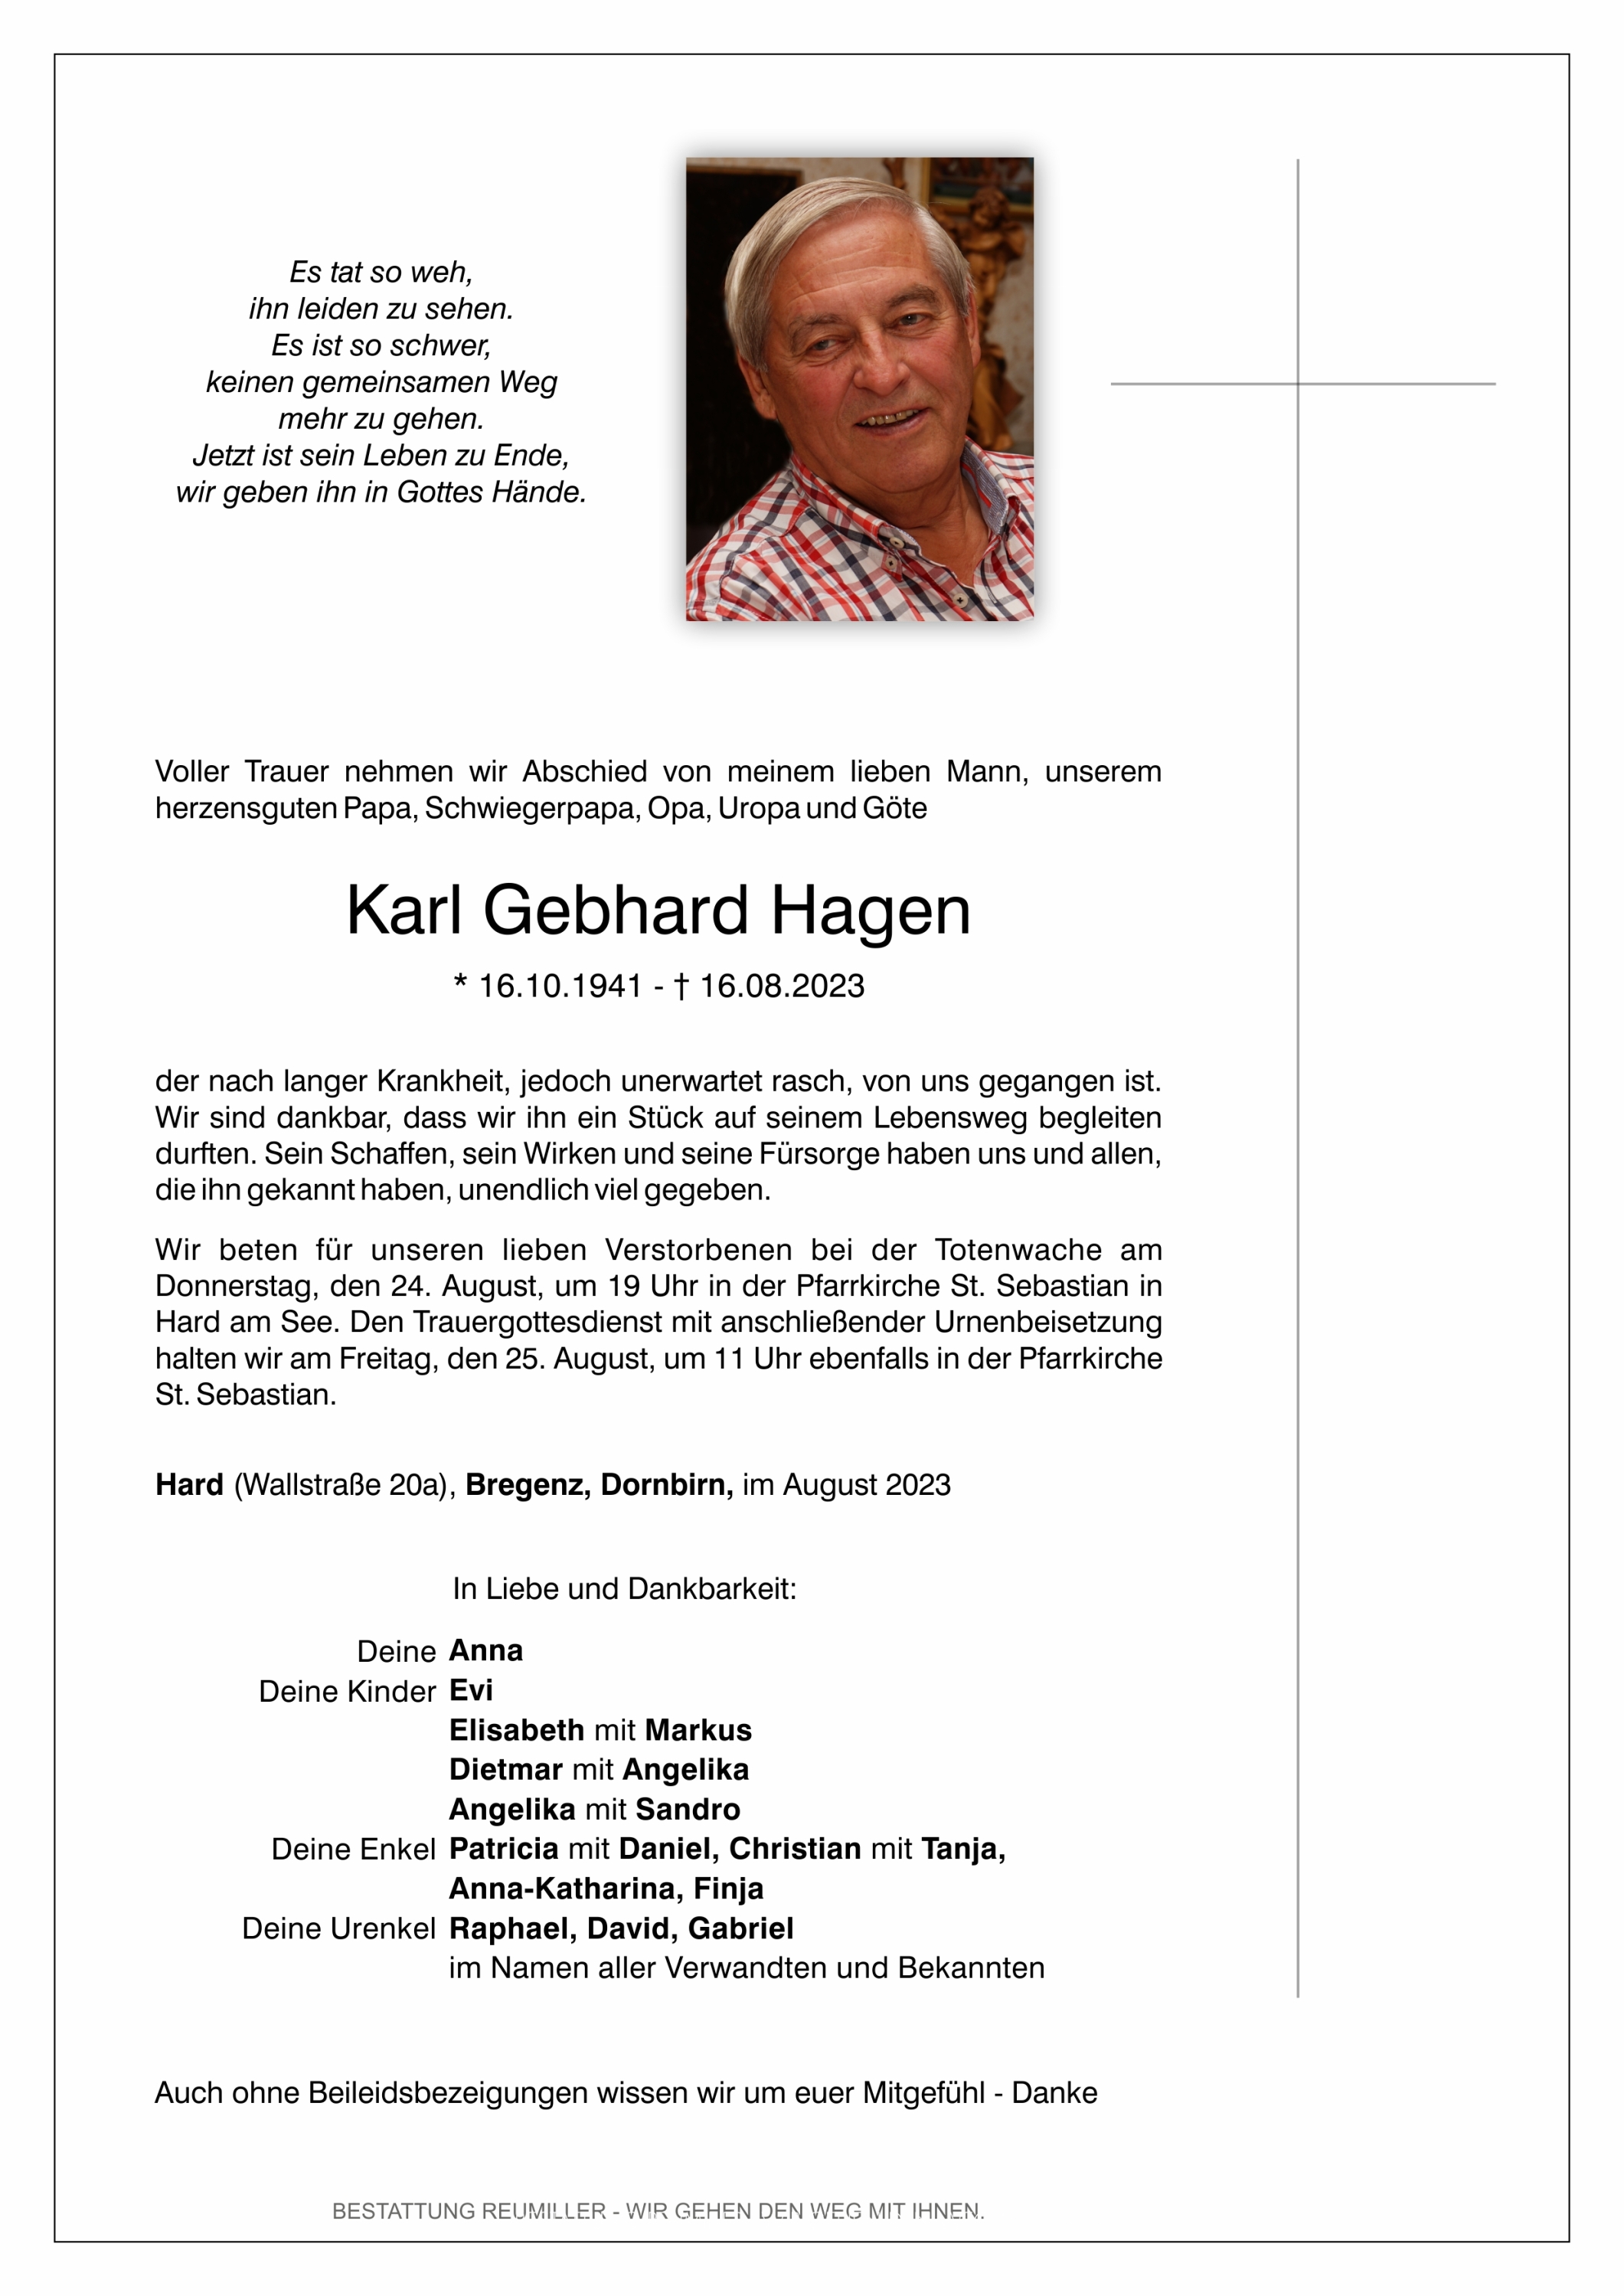 Karl Gebhard Hagen